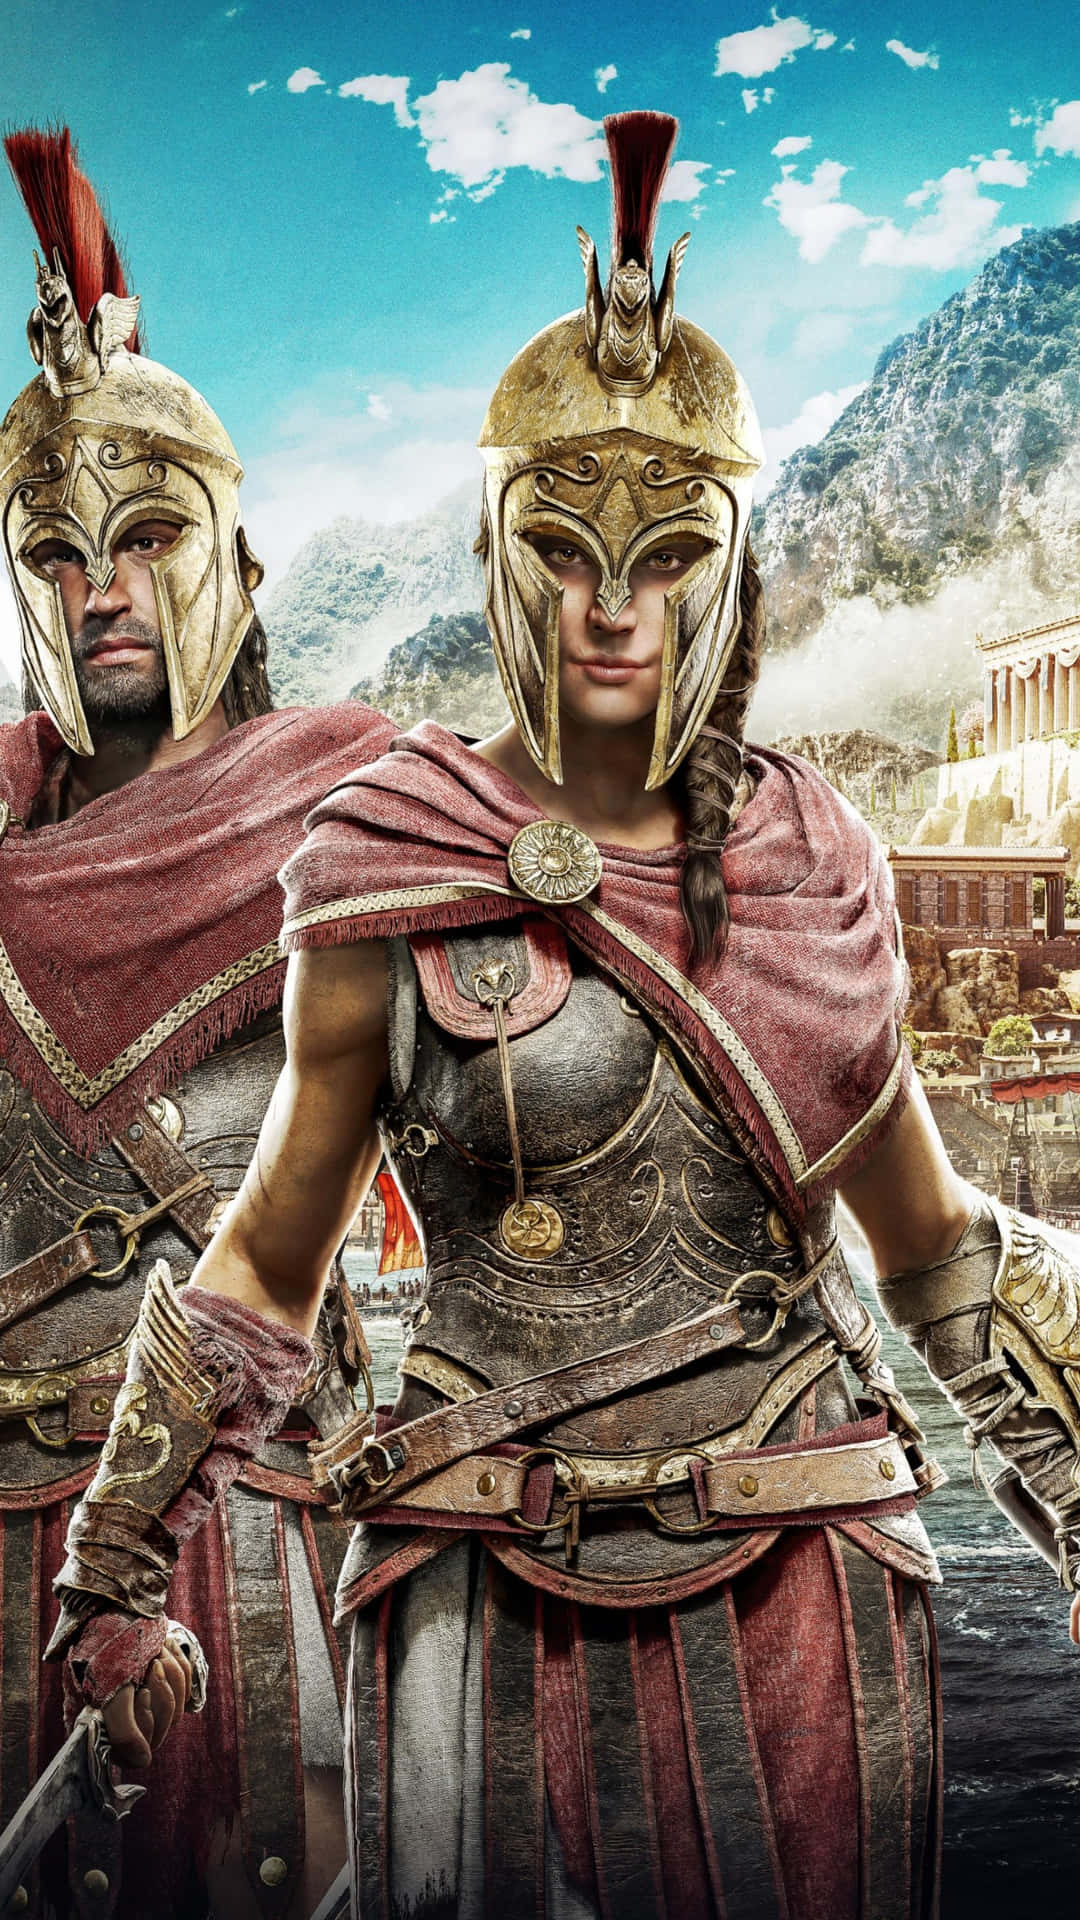 Entdeckedie Verlorenen Erblasten Des Antiken Griechenlands Auf Android Mit Assassin's Creed Odyssey